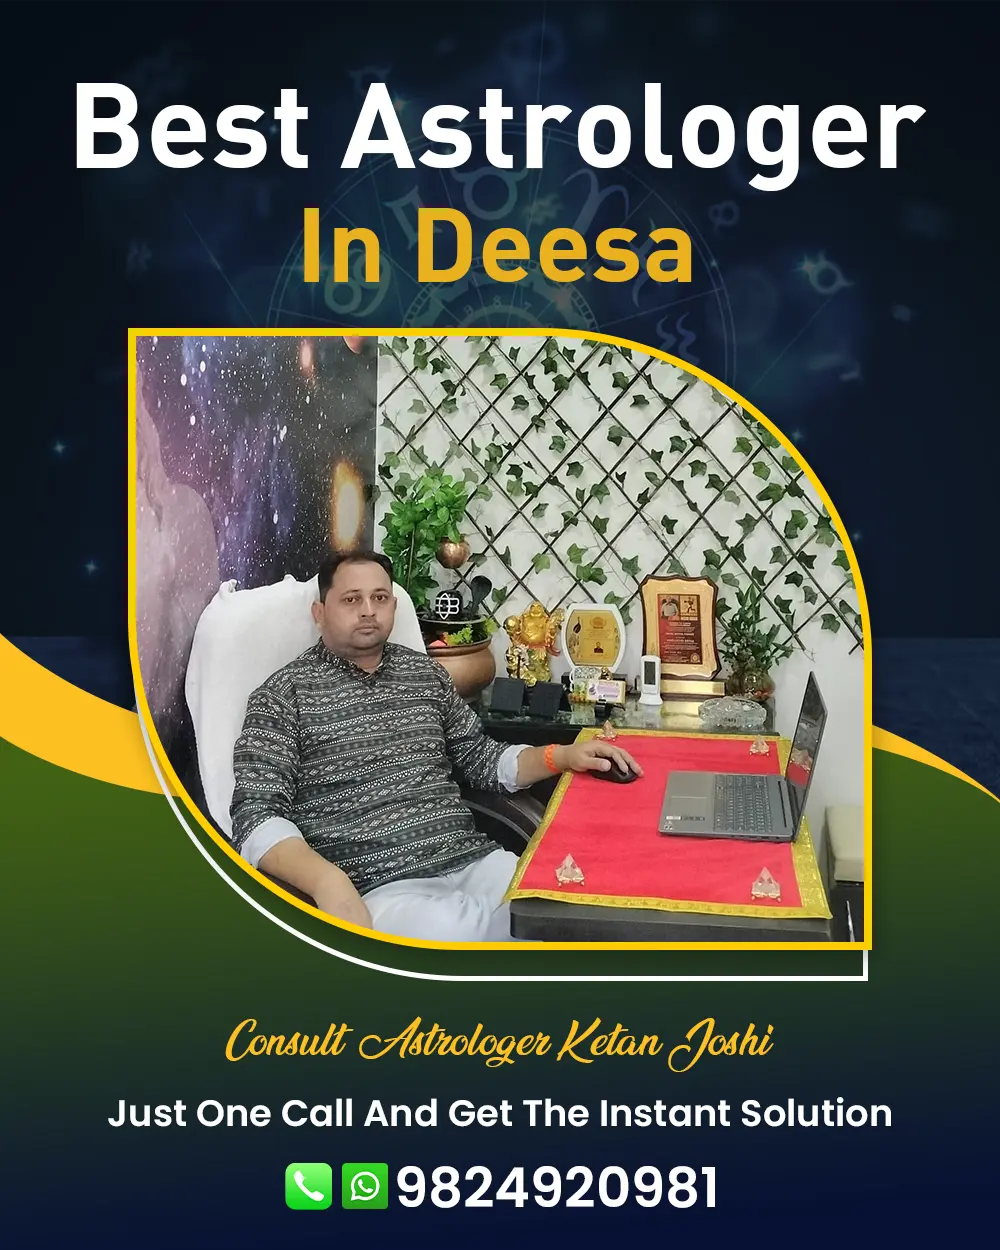 Best Astrologer In Deesa